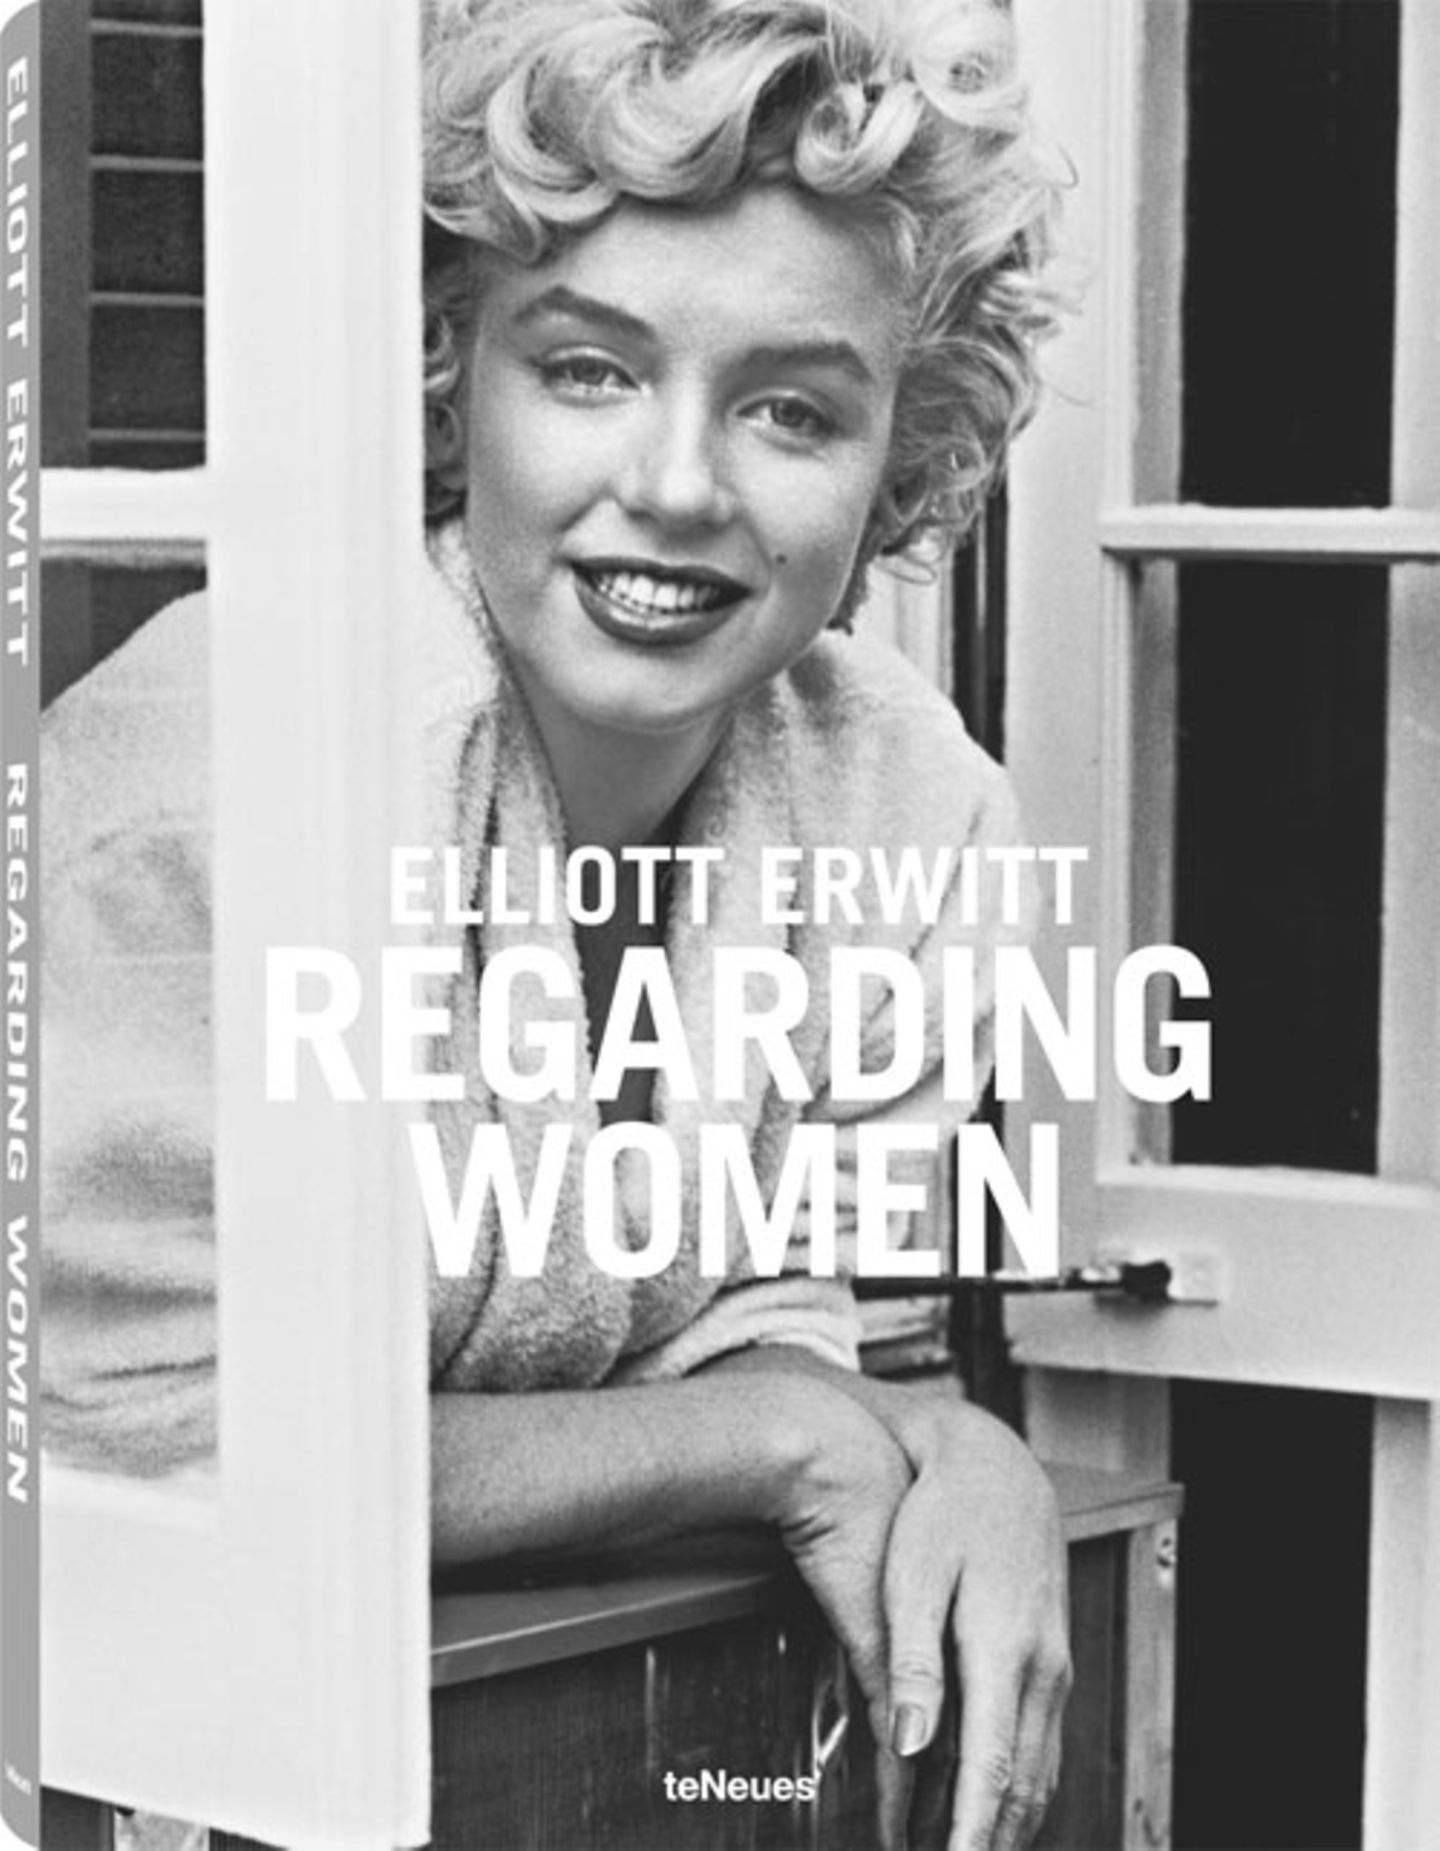 Regarding Women by Elliott Erwitt, published by teNeues, € 79,90 Mehr Informationen zu diesem Buch finden Sie auf der offiziellen Website.